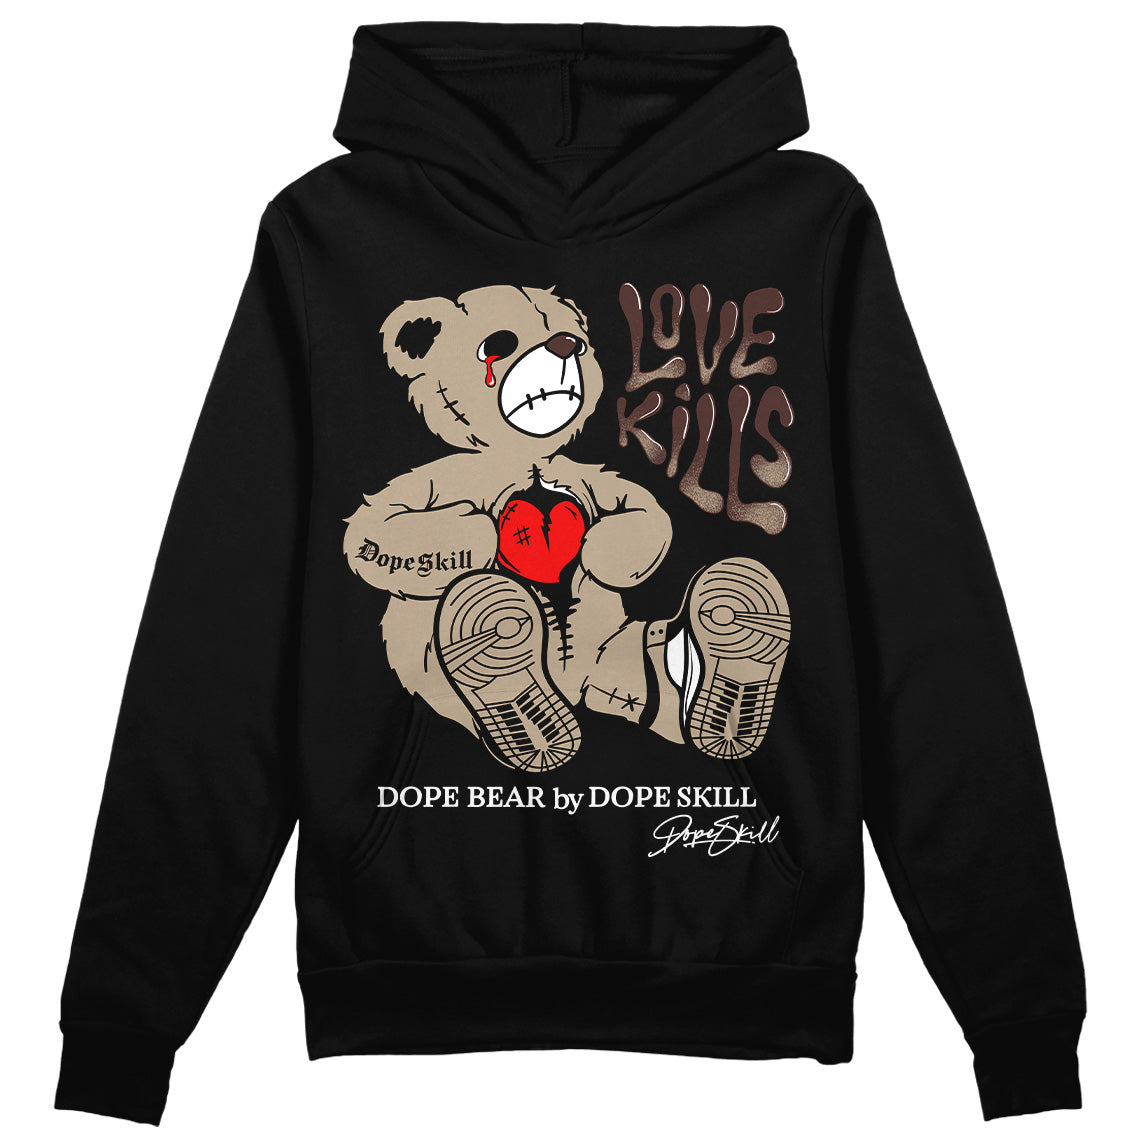 Jordan 1 High OG “Latte” DopeSkill Hoodie Sweatshirt Love Kills Graphic Streetwear - Black